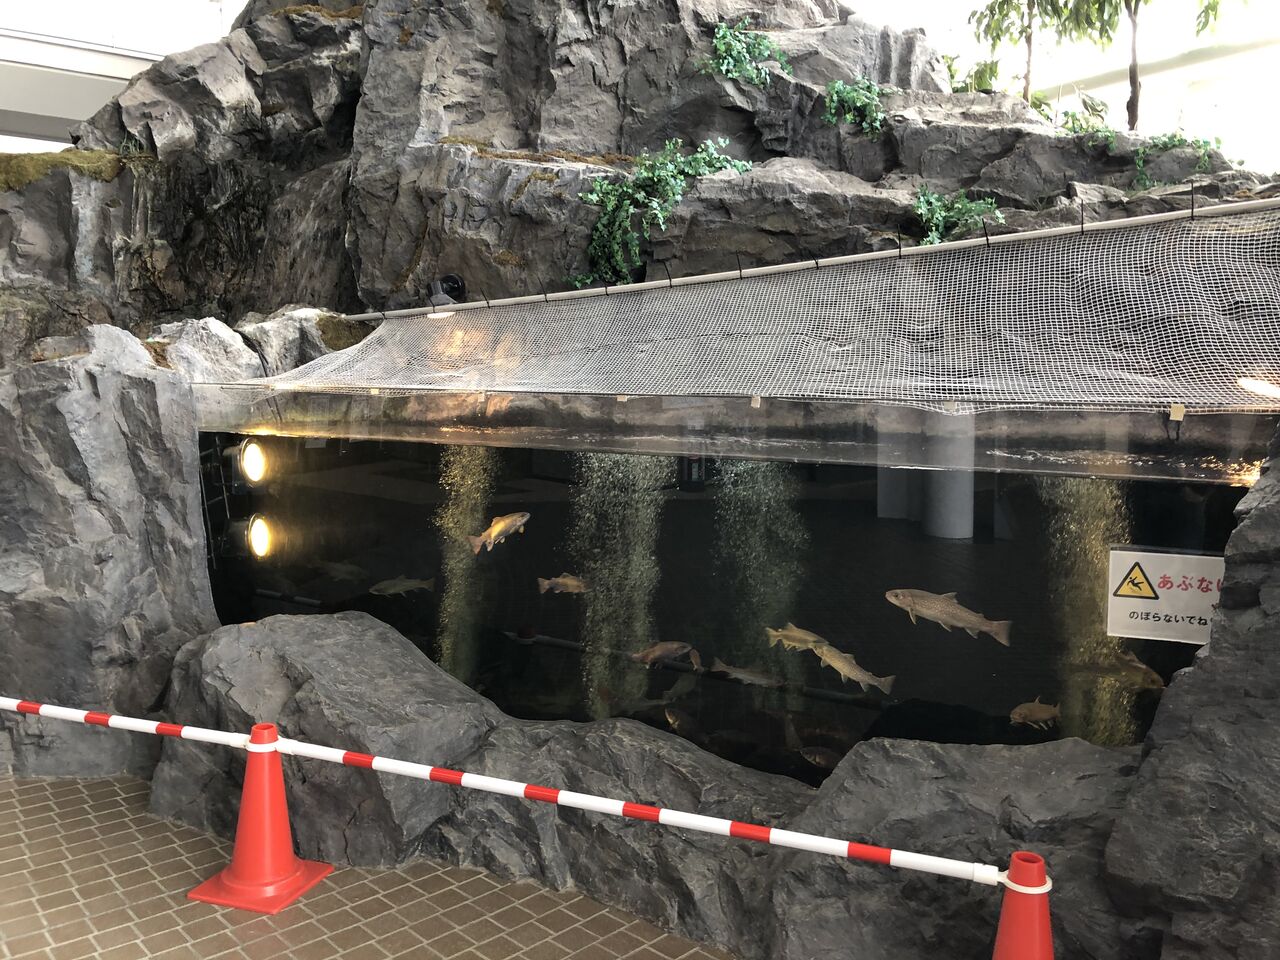 愛知県 メタウォーター下水道科学館あいち 主食は水族館です